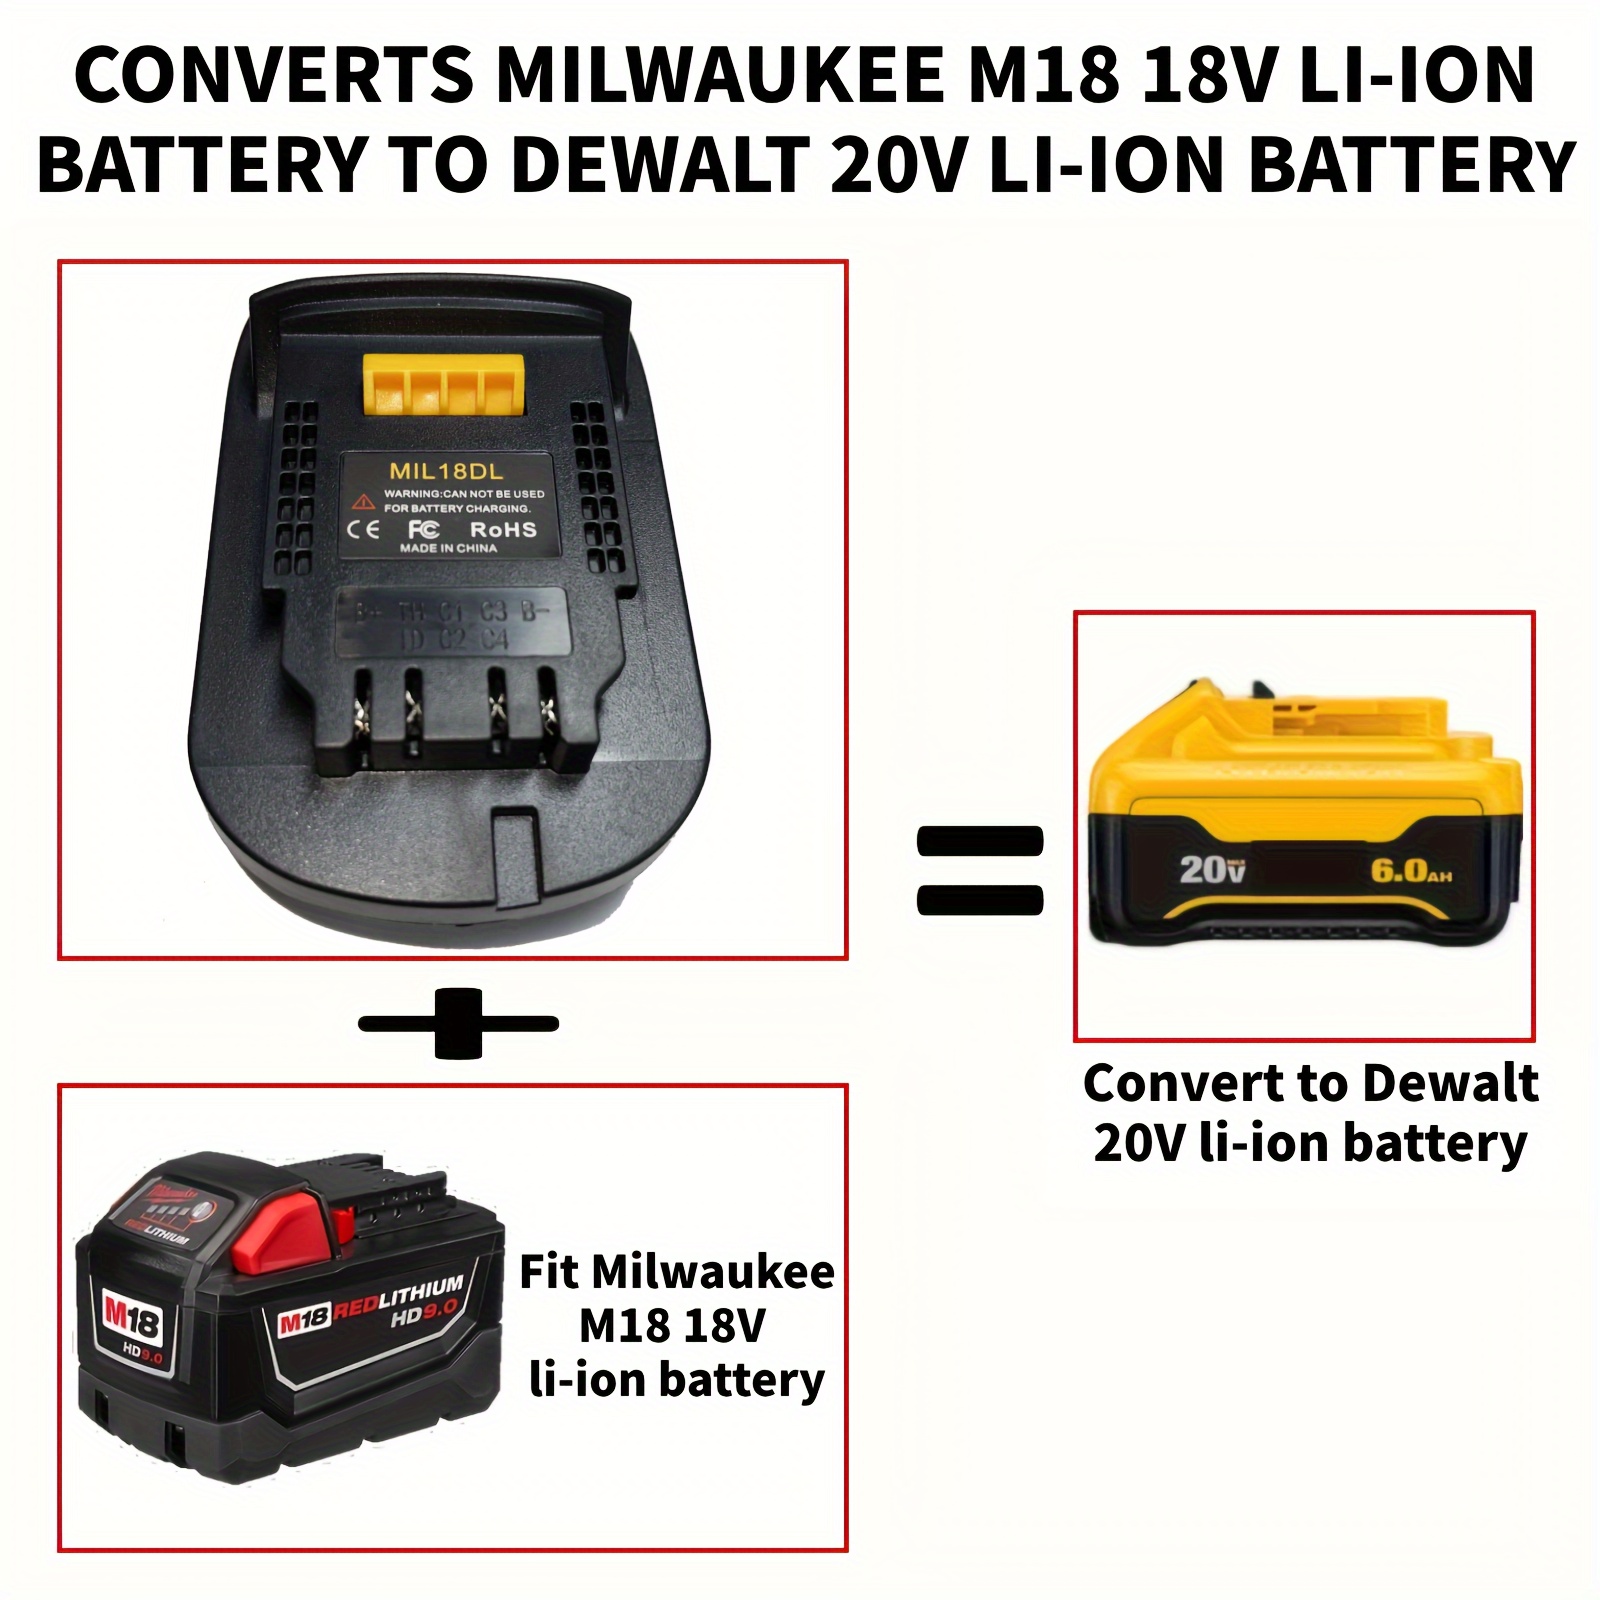 Adapter for 20V Dewalt Battery Adapter Convert for 18V Milwaukee M18 Tool  Use Battery